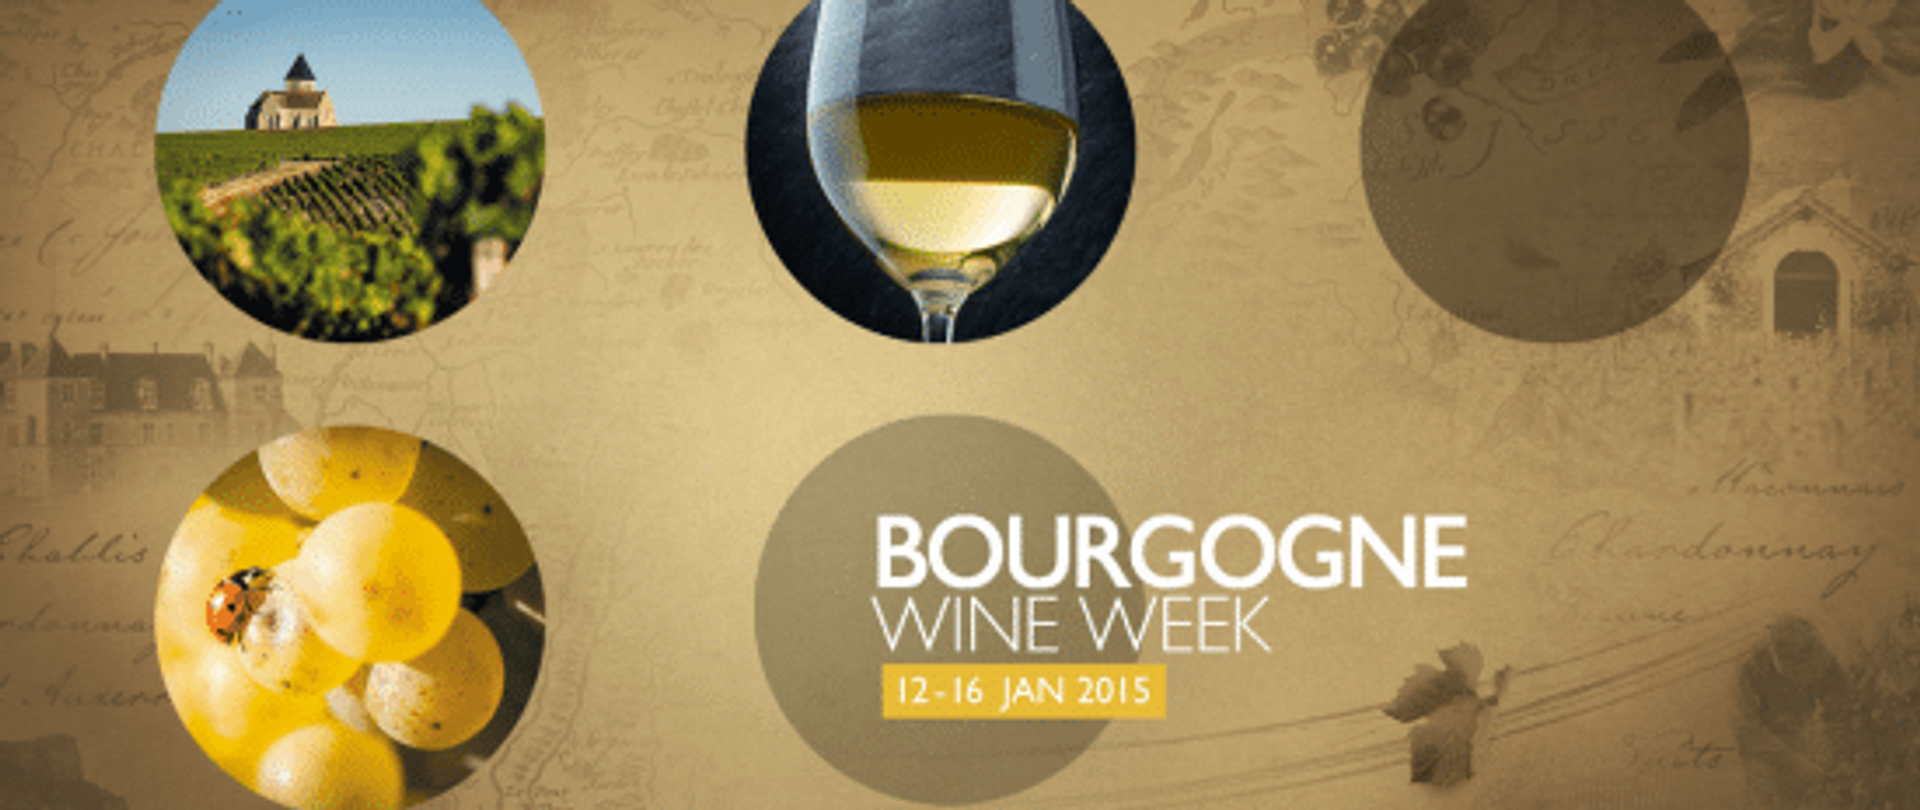 Burgundy Week